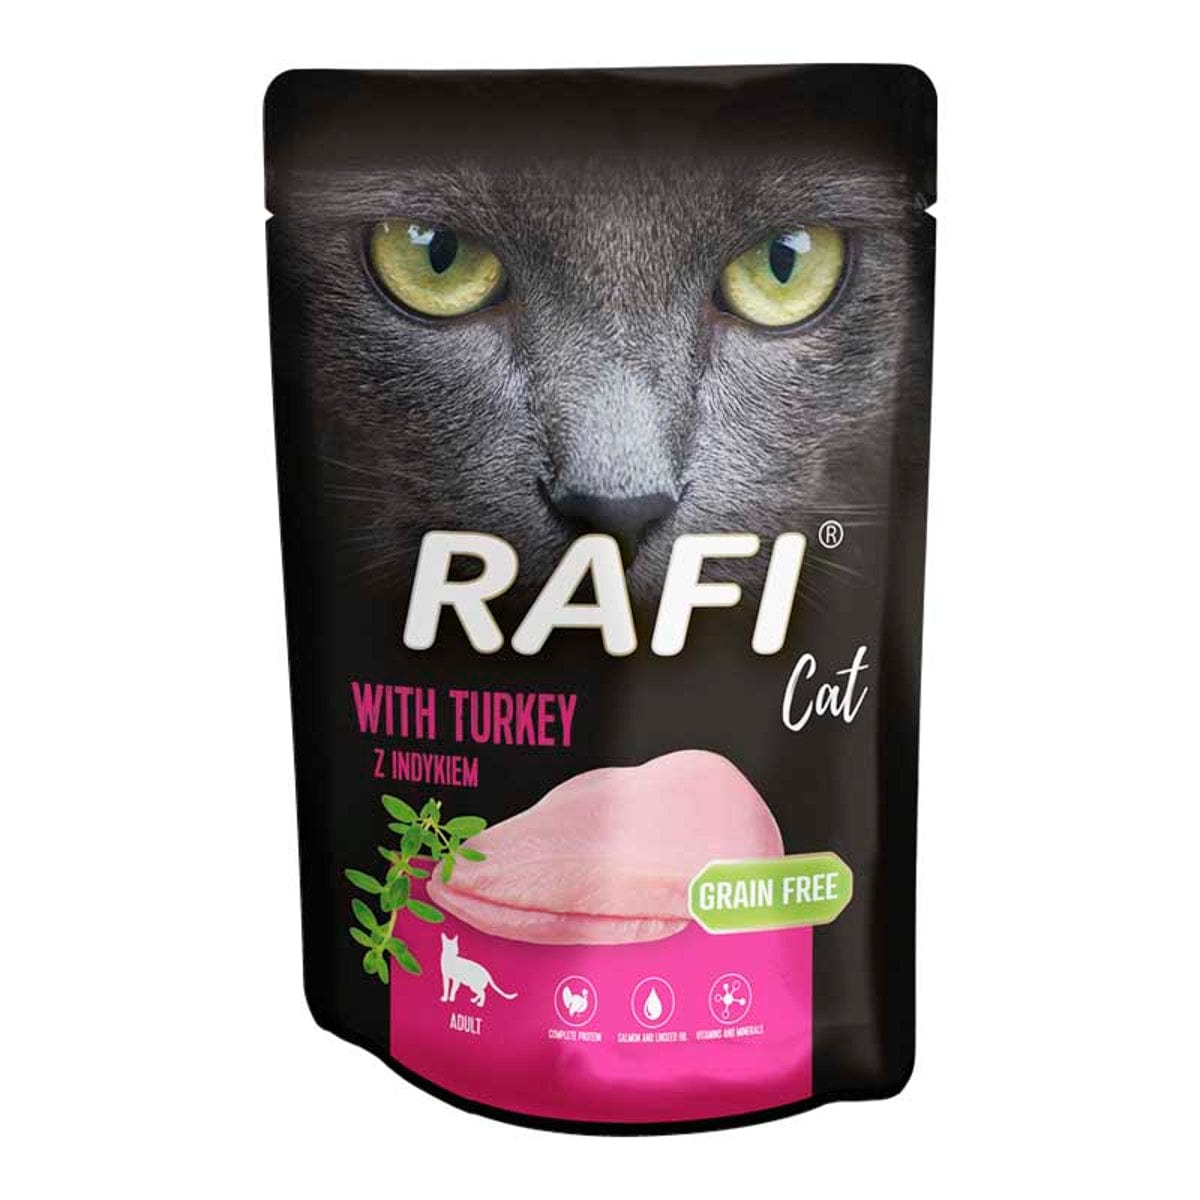 Produkt RAFI Mokra karma dla kota 24x Karma mokra dla kota RAFI z indykiem 100 g K_S00443_24